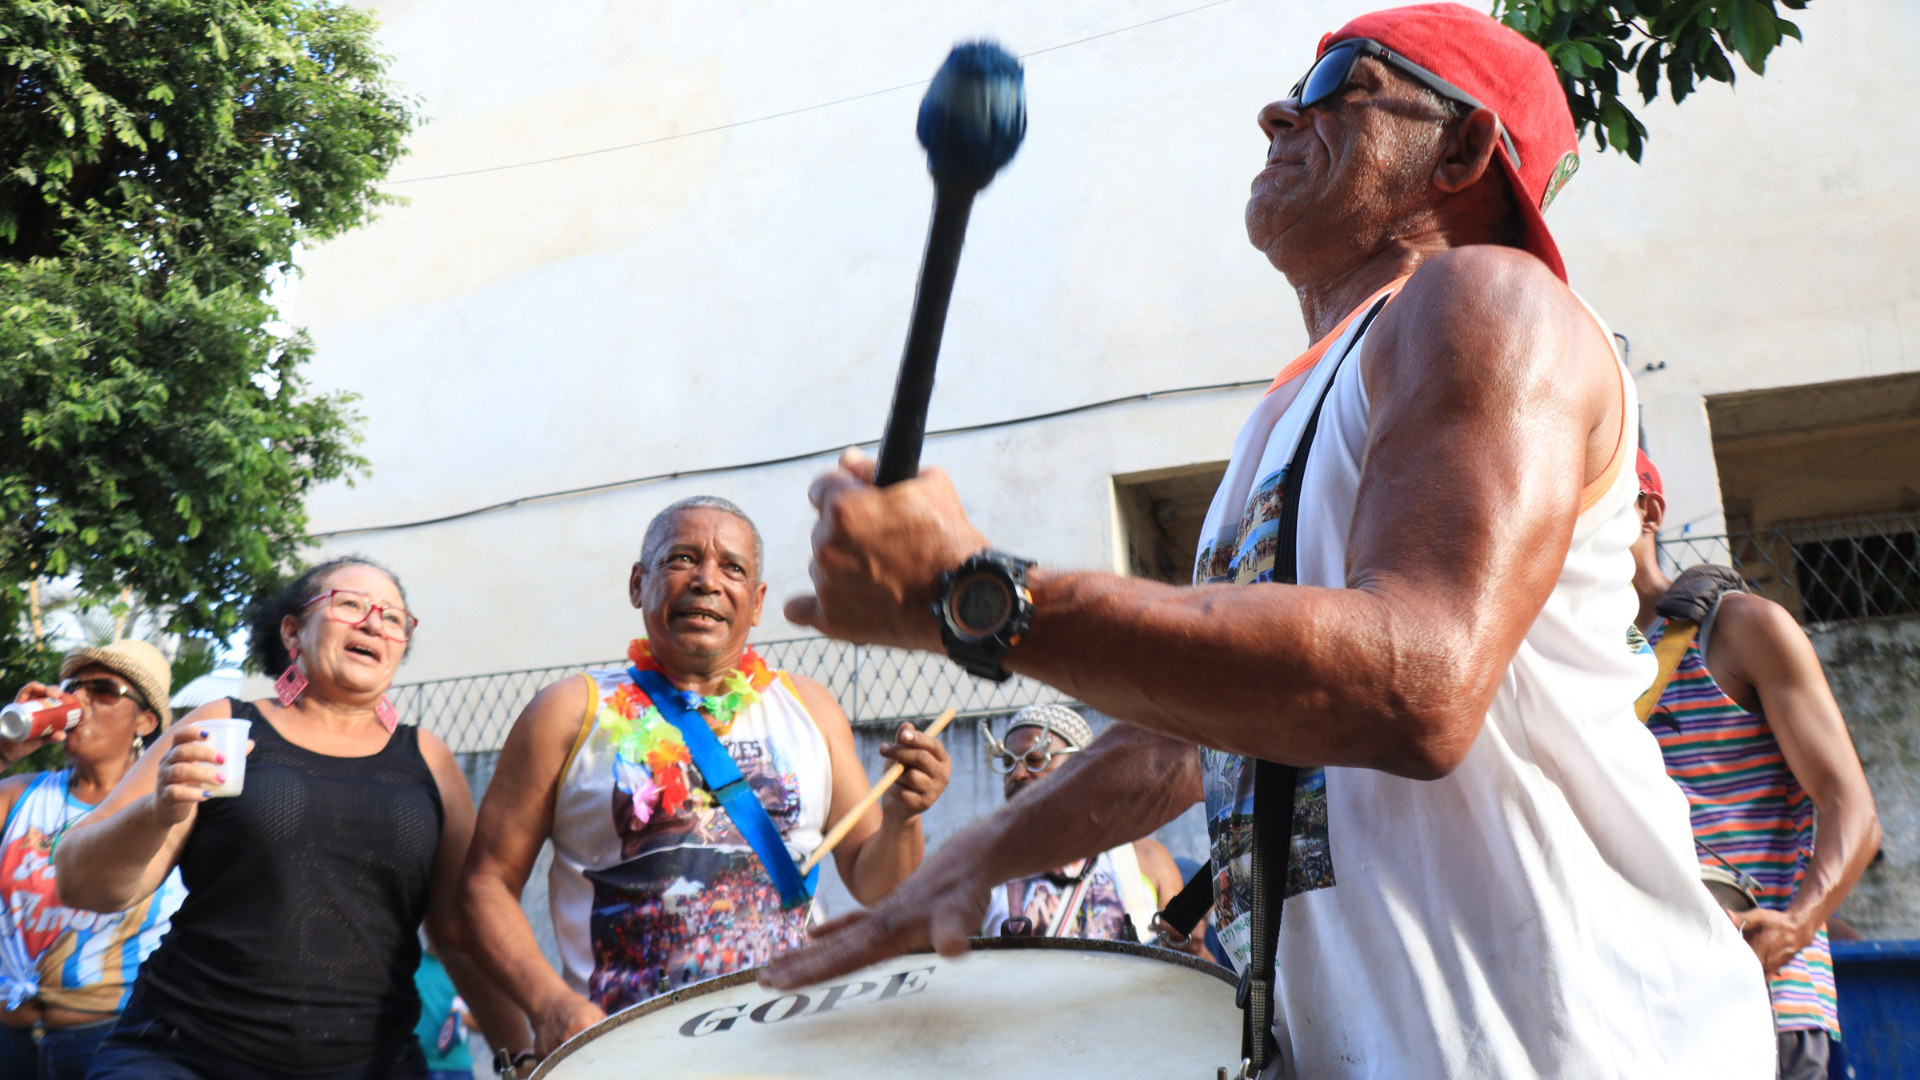 Carnaval: 8 dicas para curtir com saúde e segurança